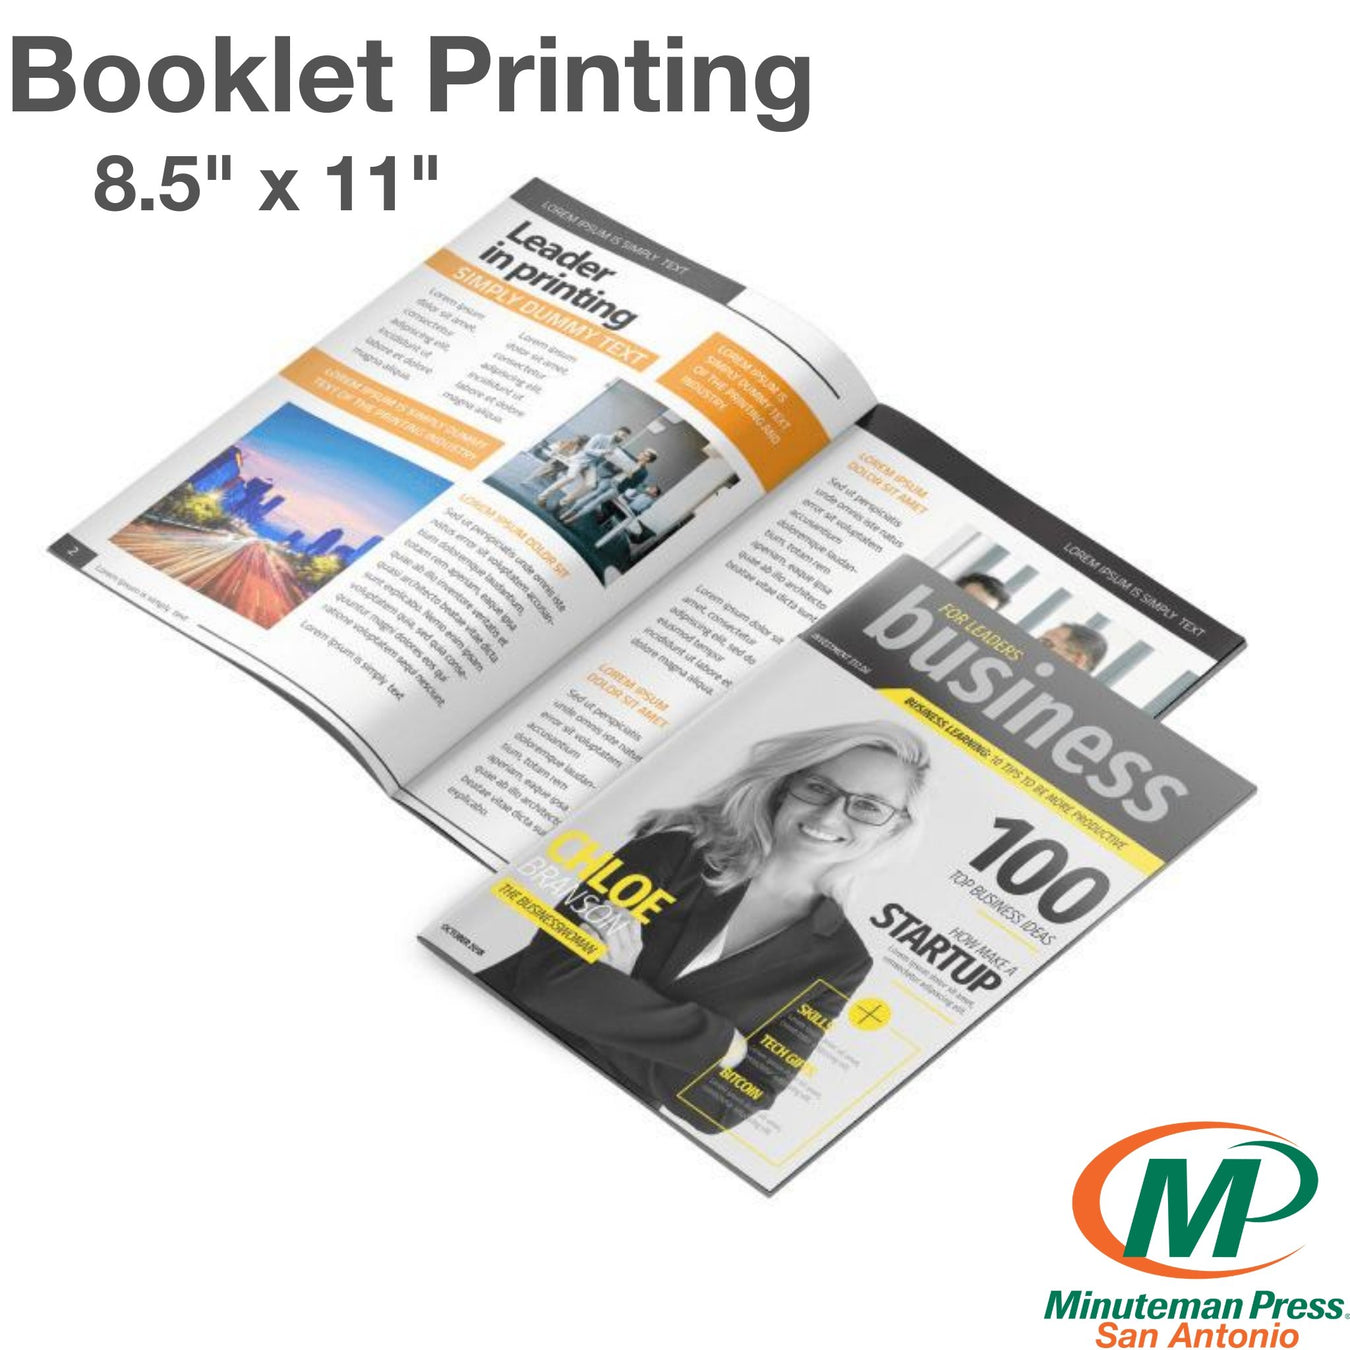 Booklet Printing in San Antonio TX | Minuteman Press formely La Luz Printing Company | San Antonio TX Printing